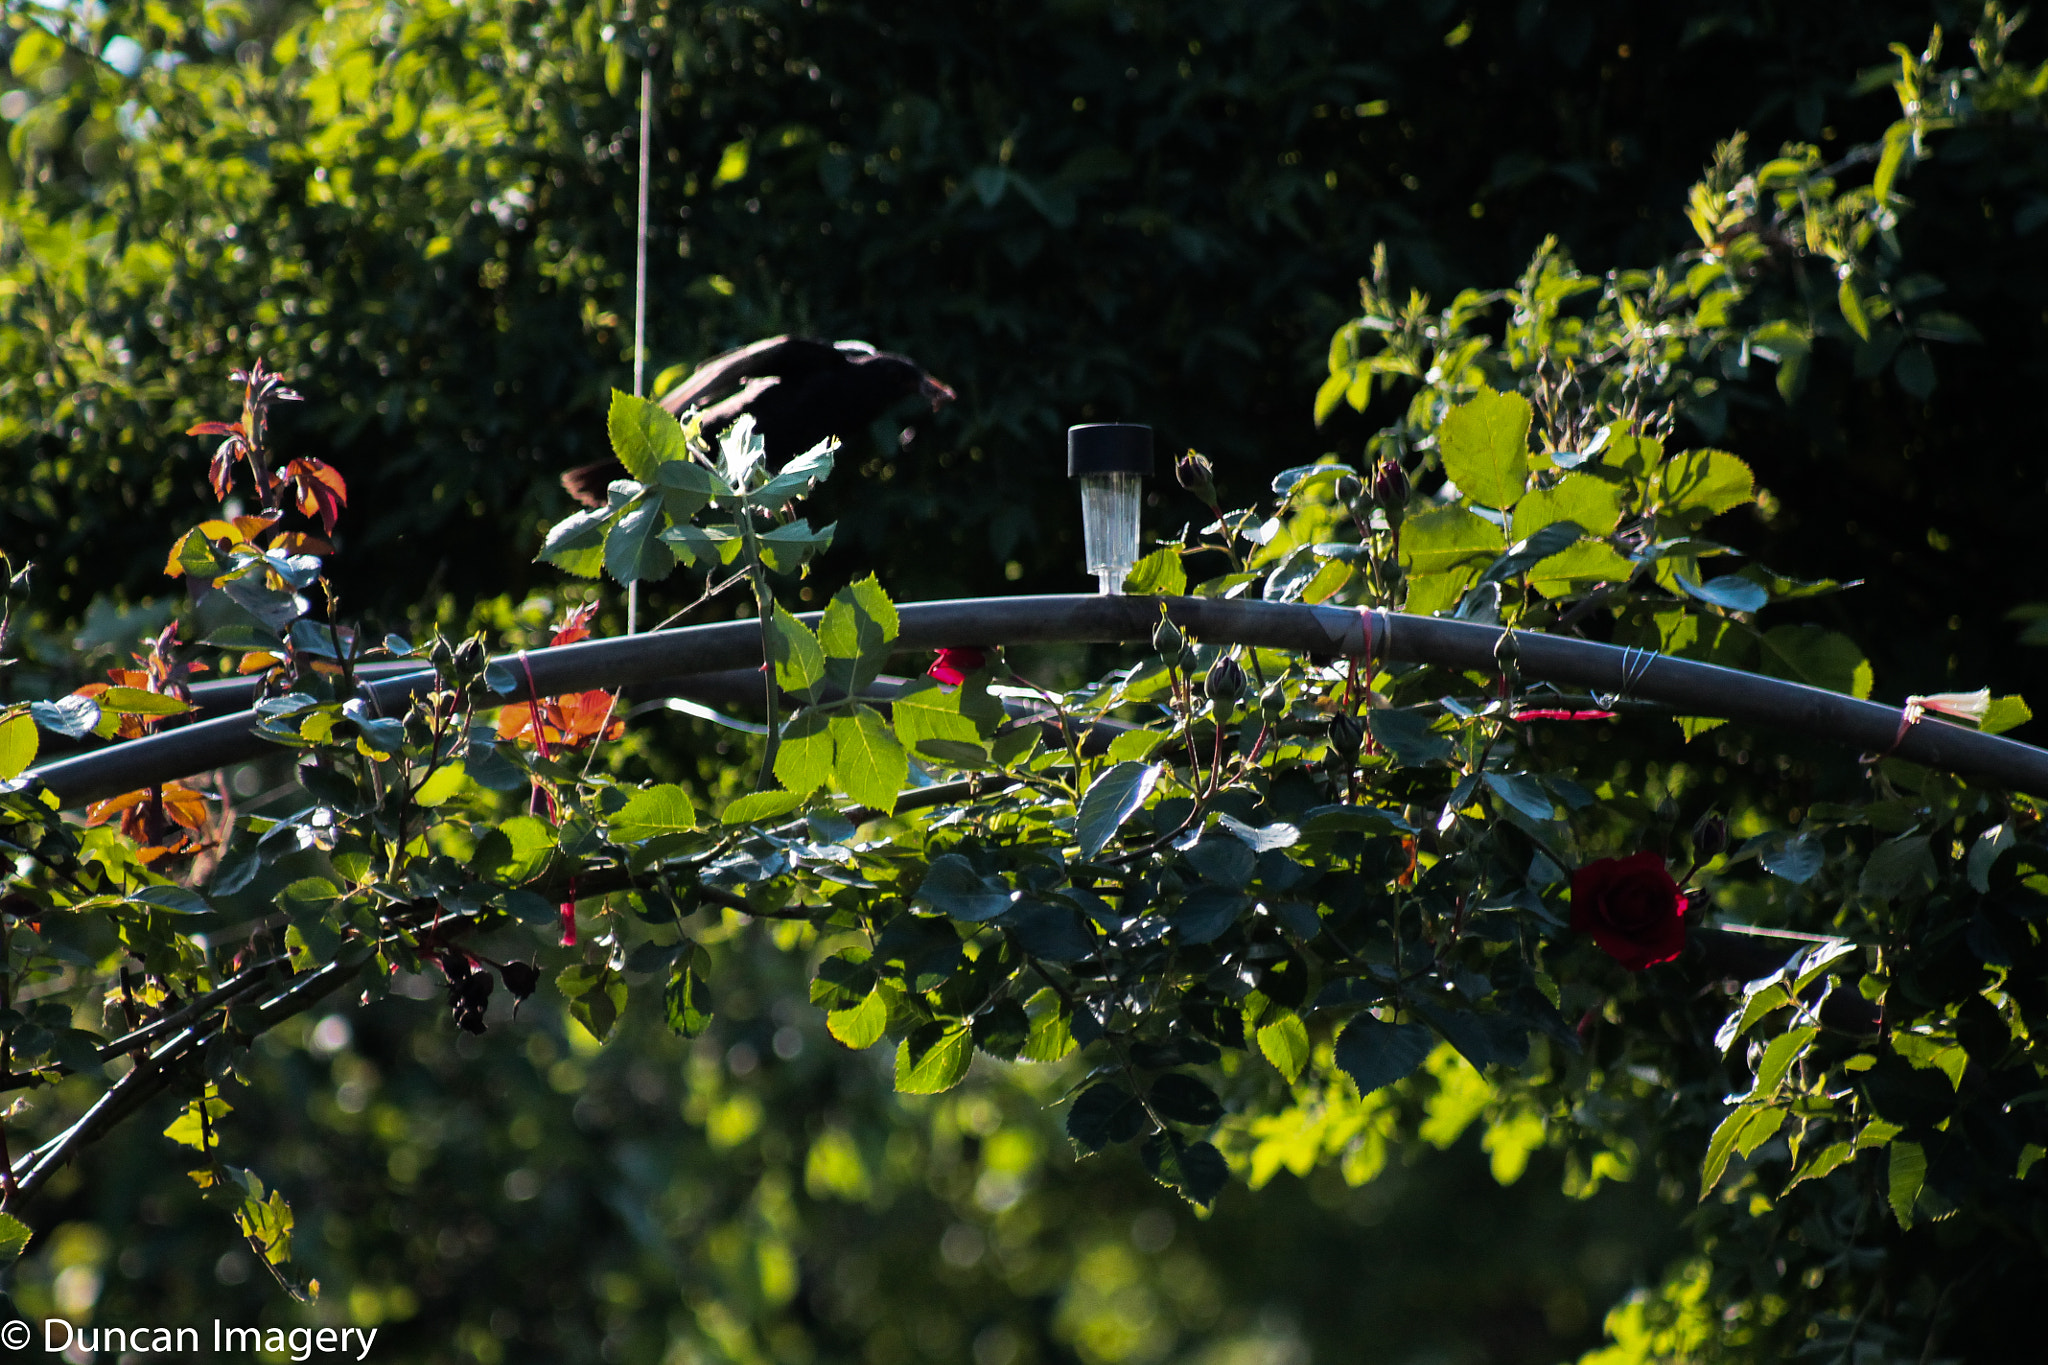 Canon EOS 1100D (EOS Rebel T3 / EOS Kiss X50) + Canon EF 80-200mm F4.5-5.6 II sample photo. Spring garden with bird photography